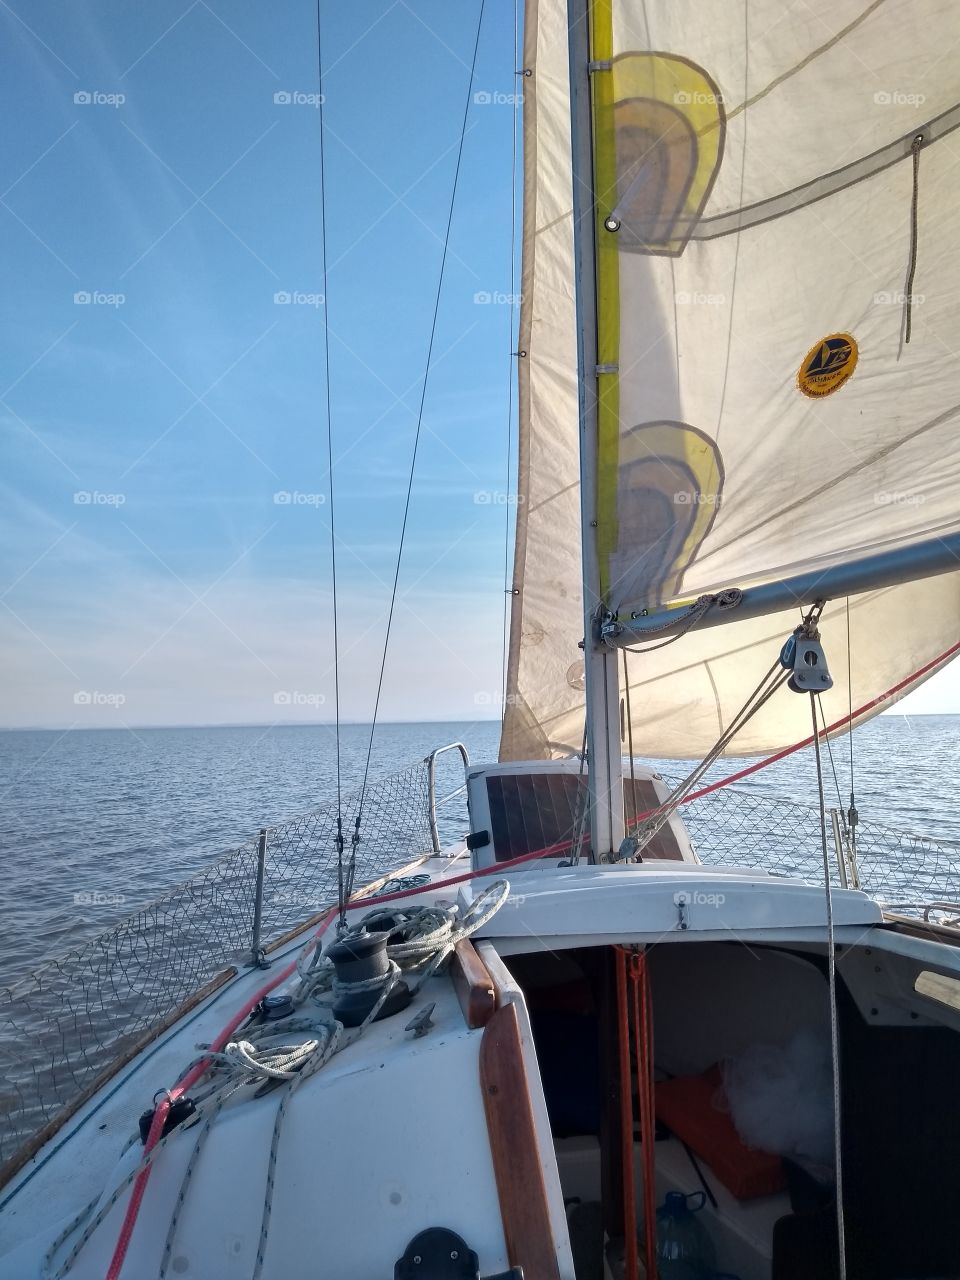 Sail time